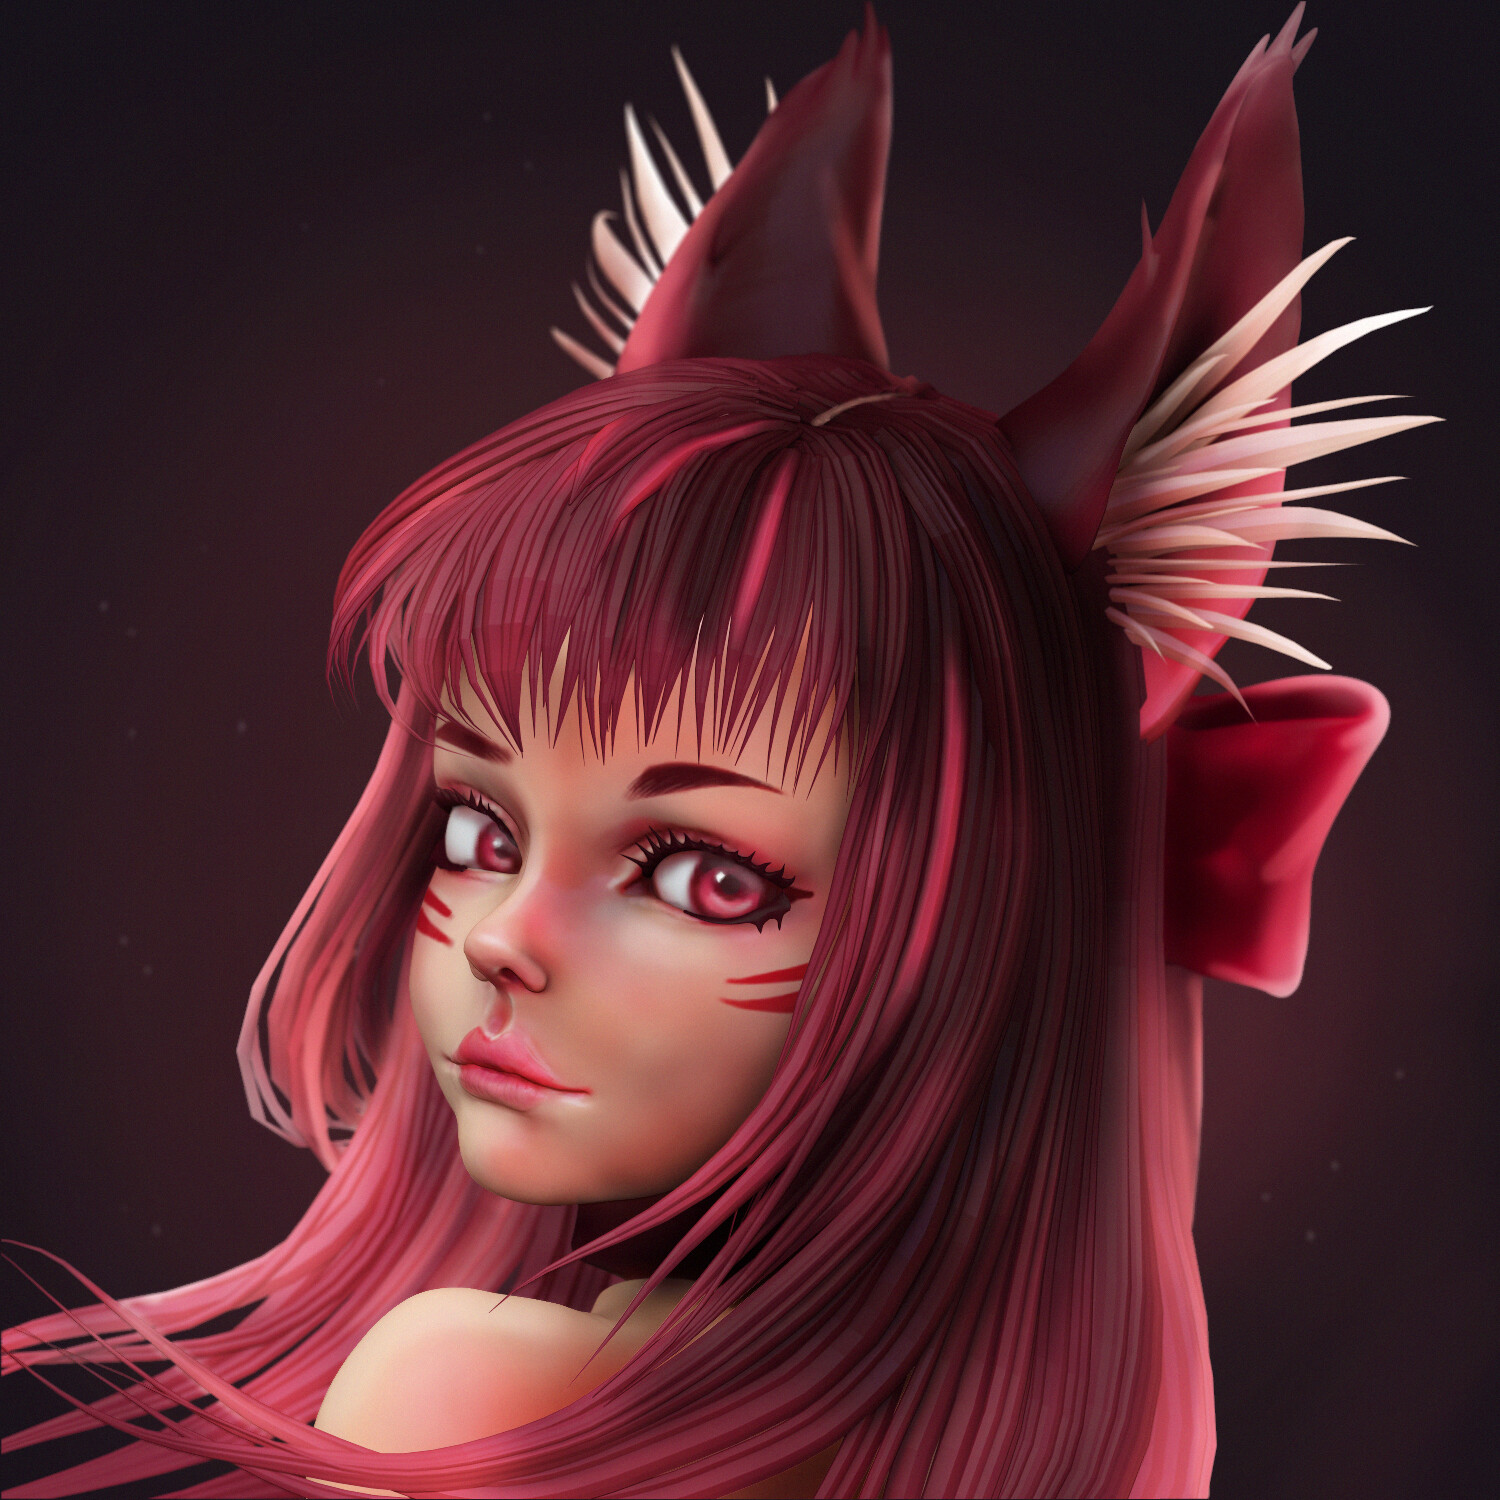 ArtStation - Cat girl